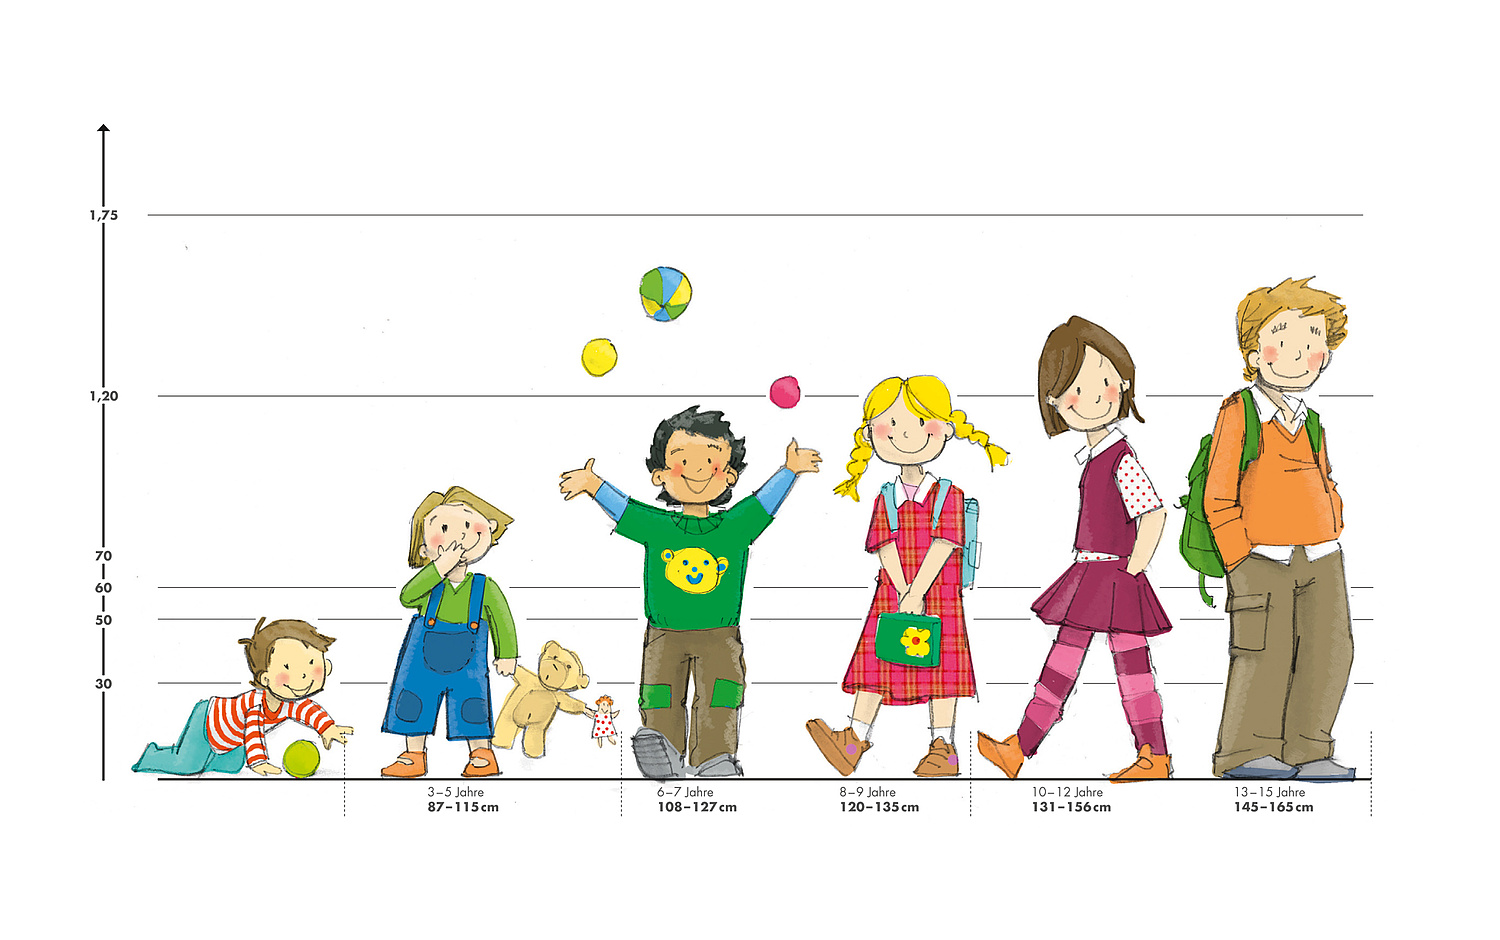 Das Bild zeigt eine Zeichnung von verschiedenen Kindern verschiedenen Alters im Größenvergleich. Jako-o, 2011 (© Papenfuss | Atelier)